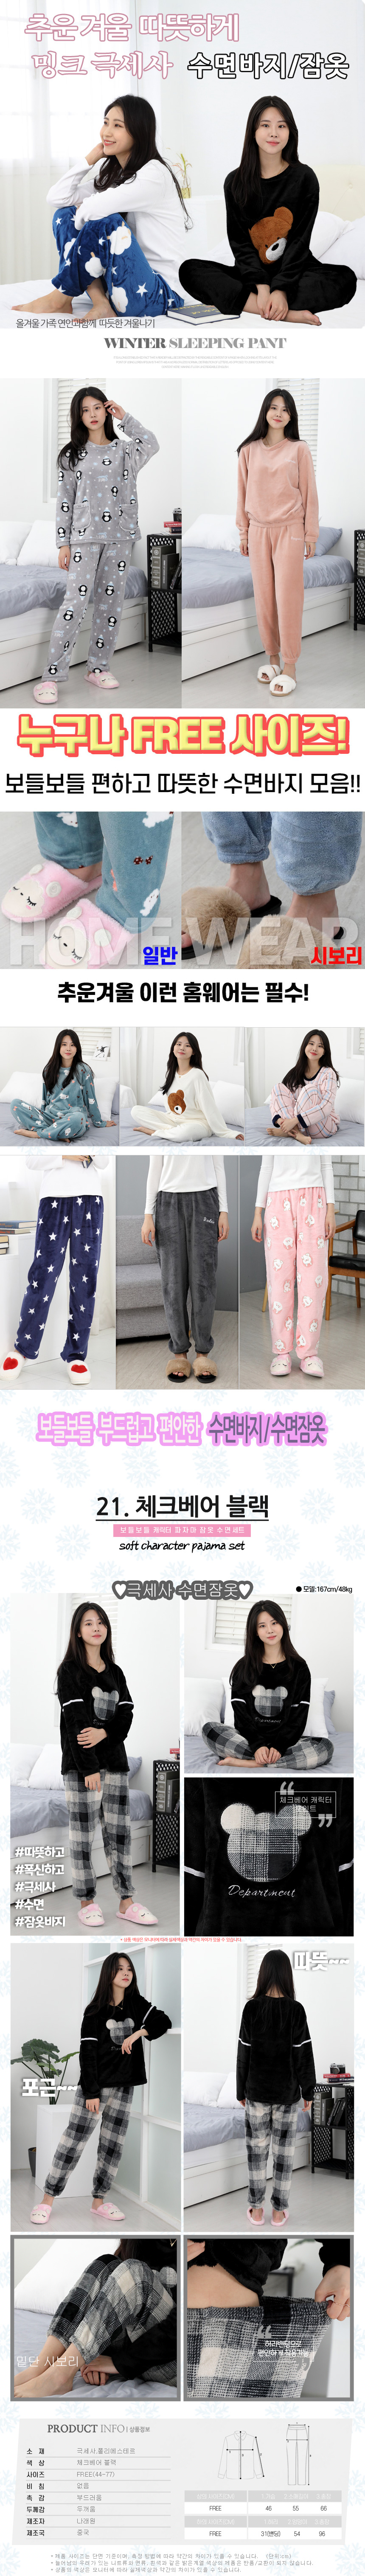 sleeping_pajamas_set_21.jpg